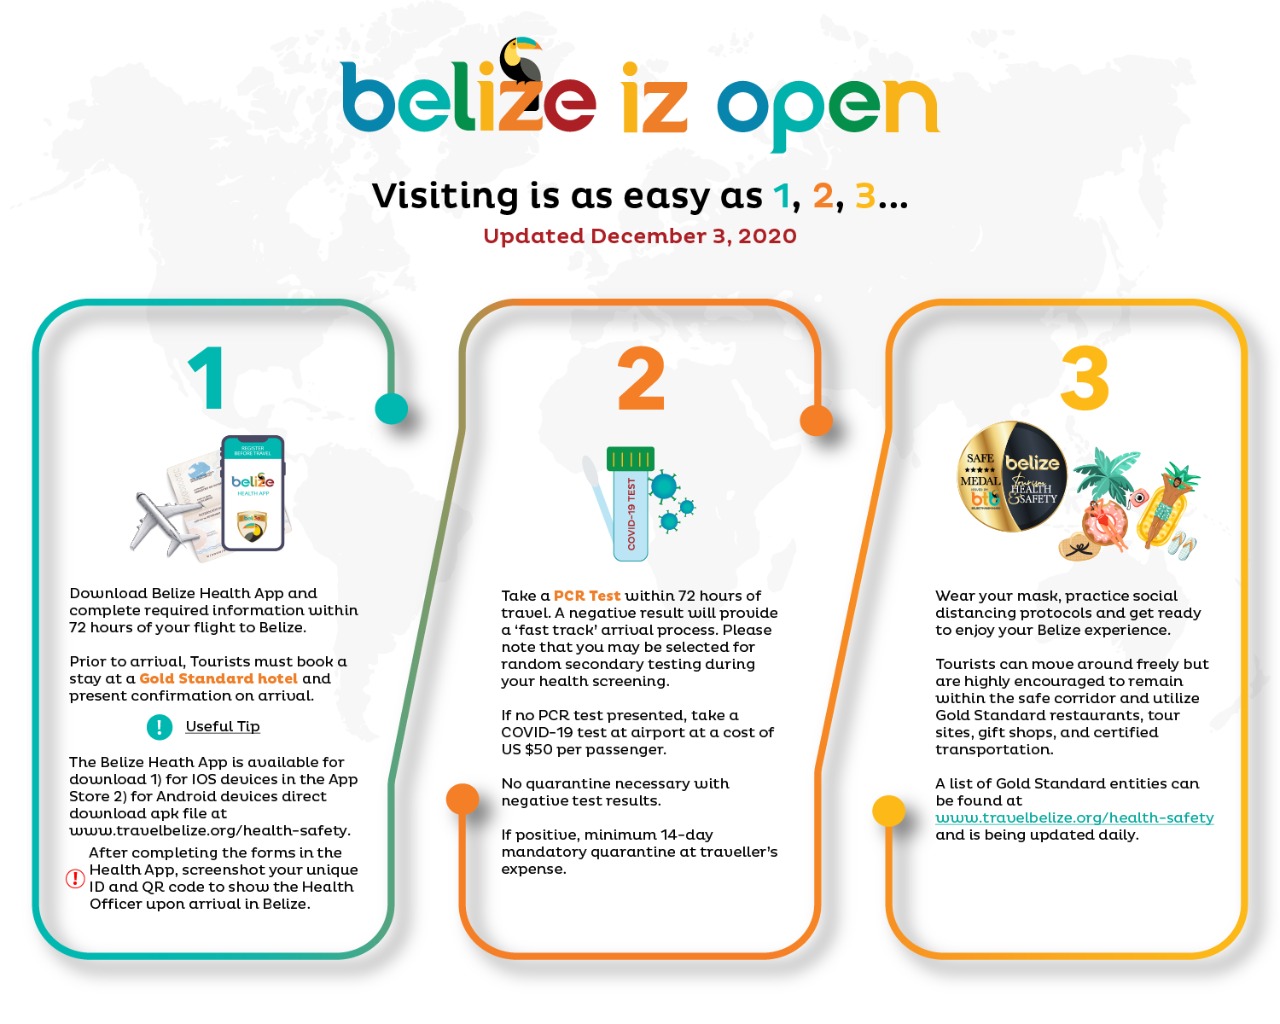 Requisitos de entrada no Belize